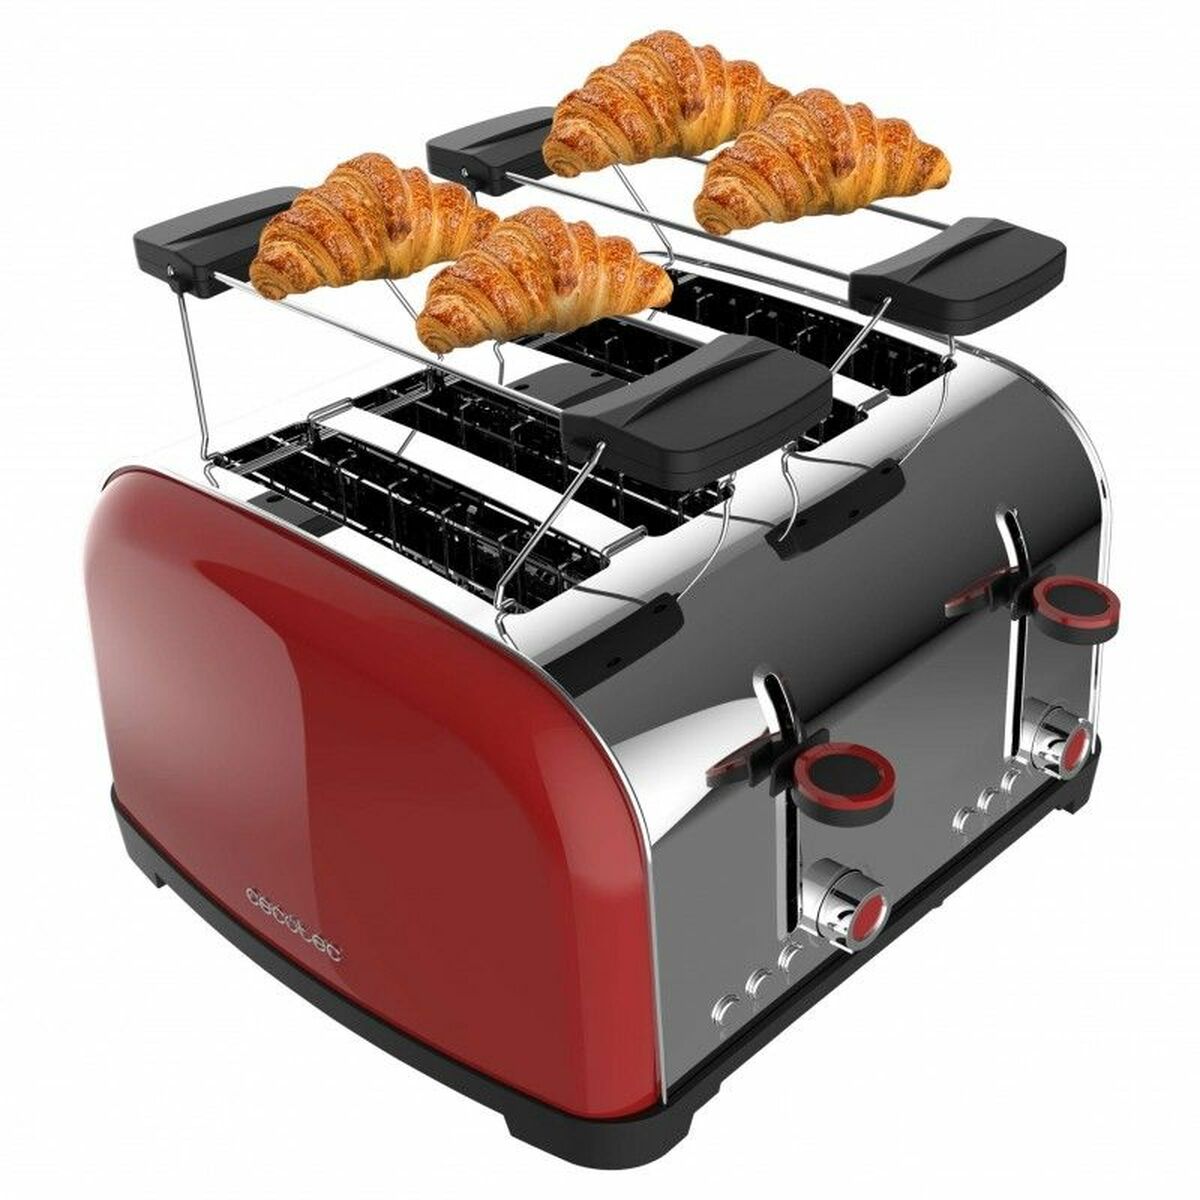 Toaster Cecotec Toastin' time 1700 Double 1700 W